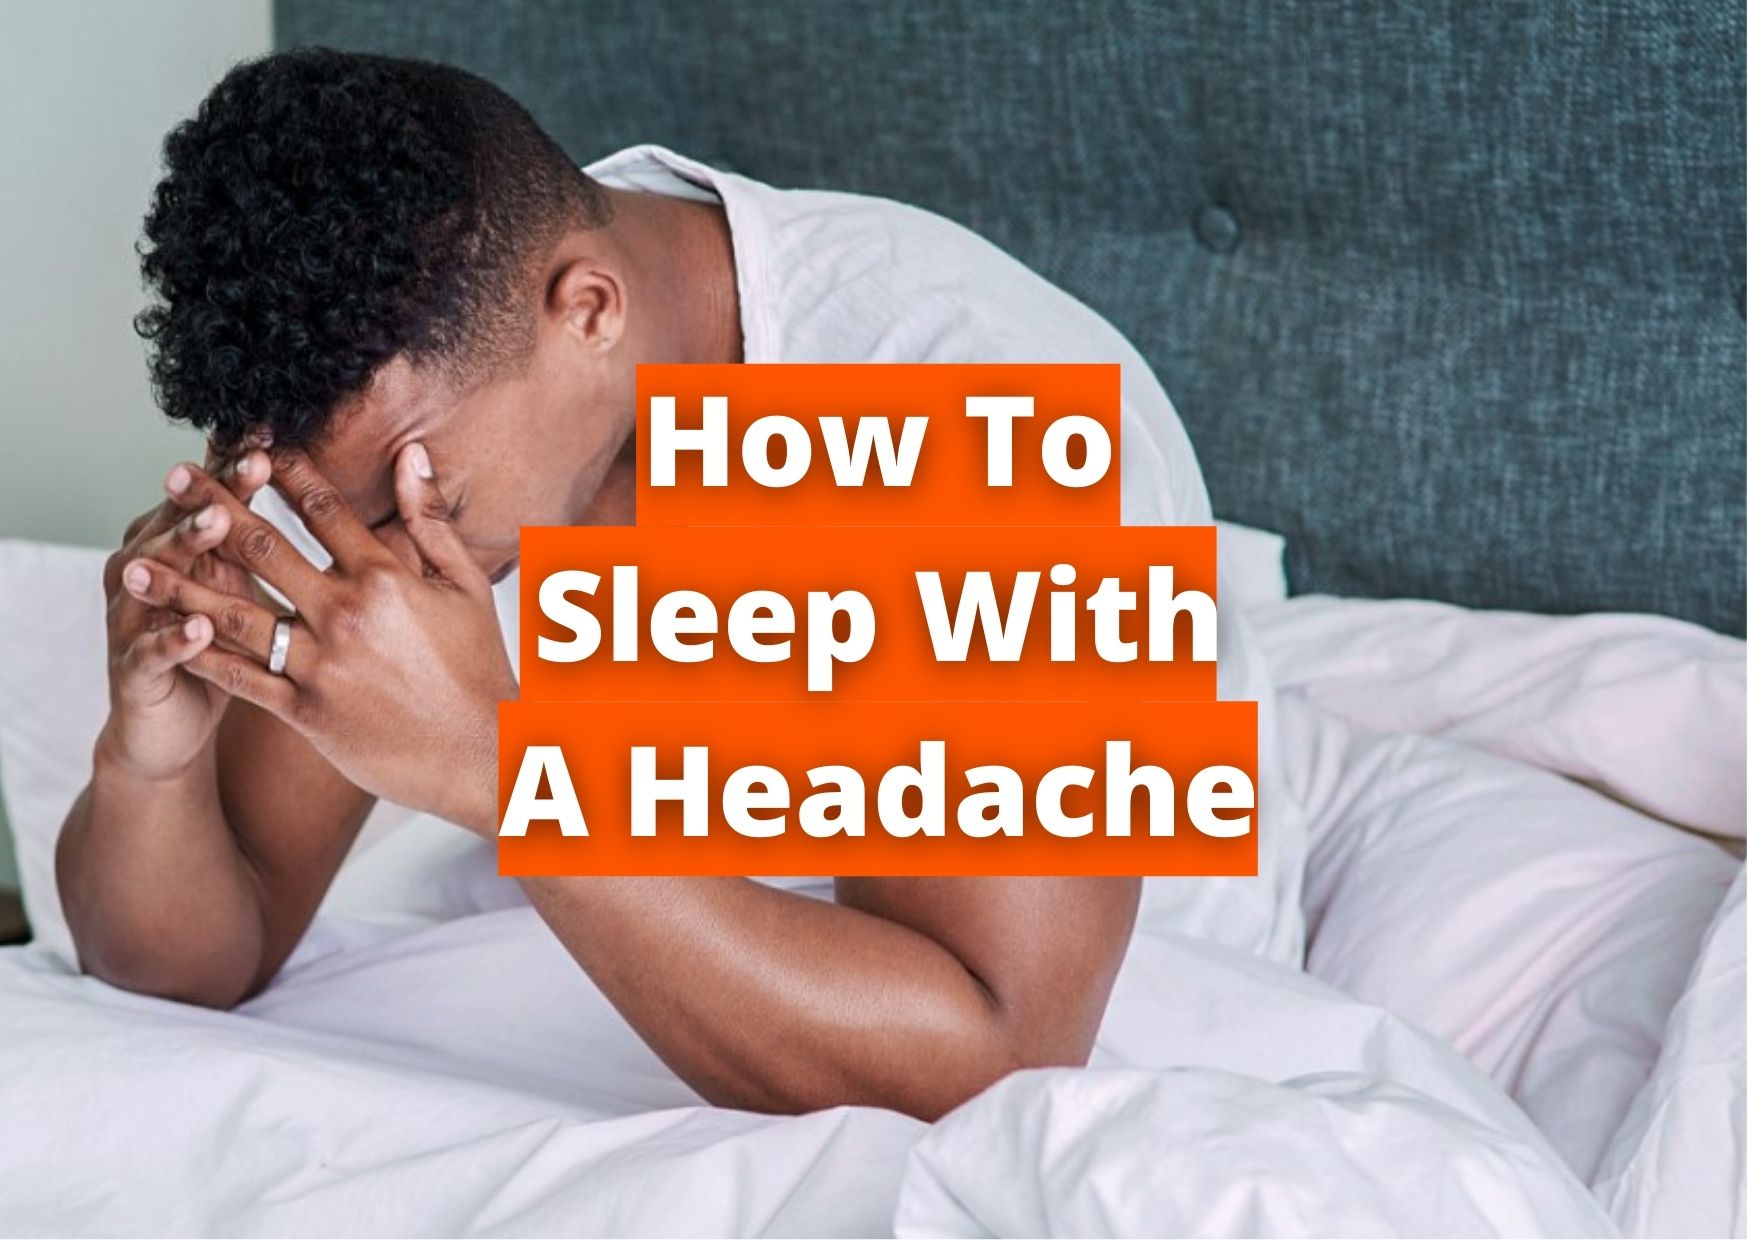 How to sleep with a headache